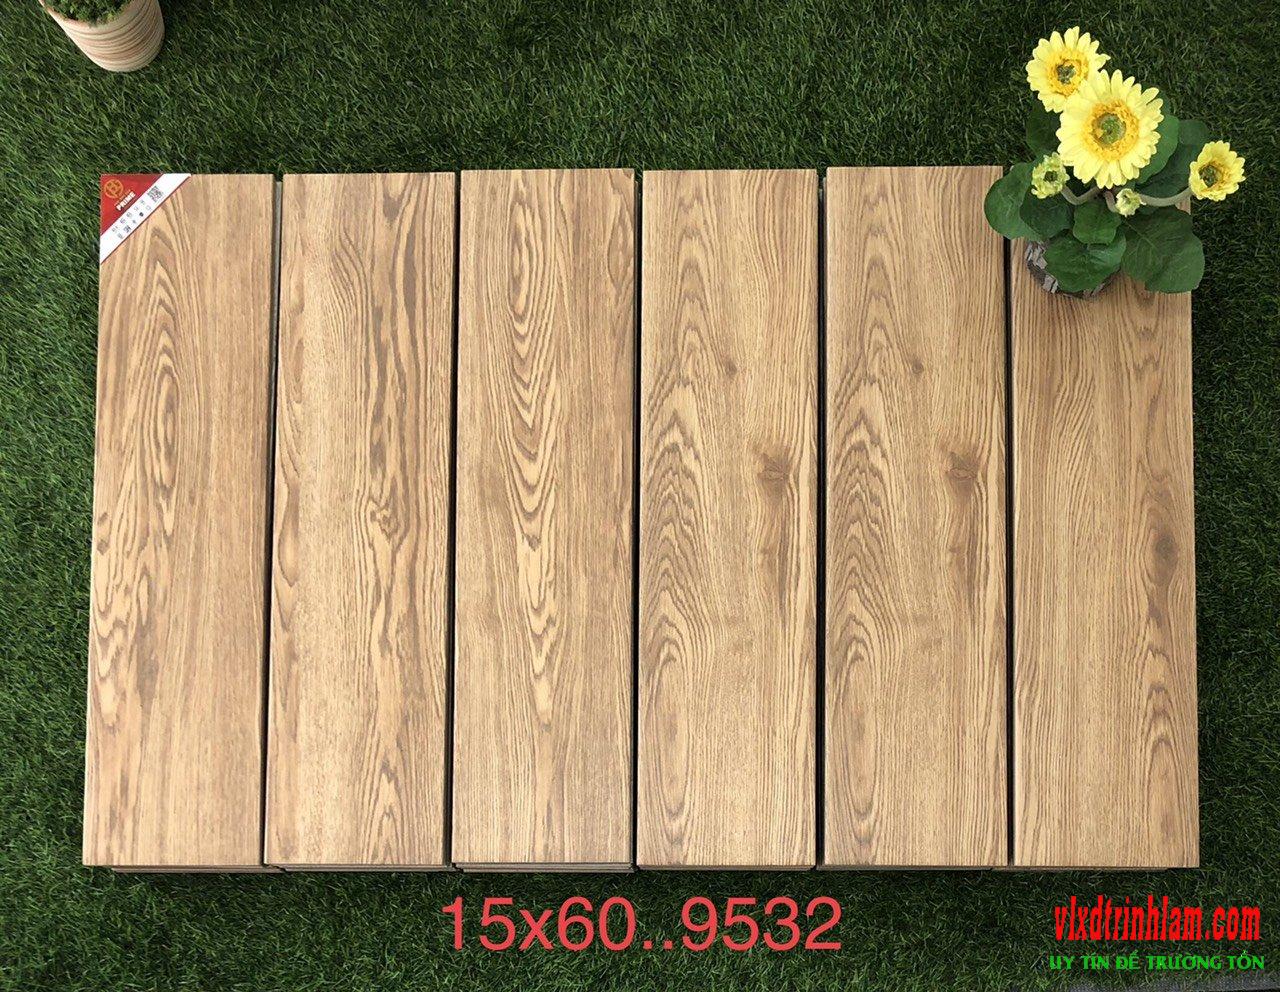 Gạch giả gỗ Prime  MS N9532